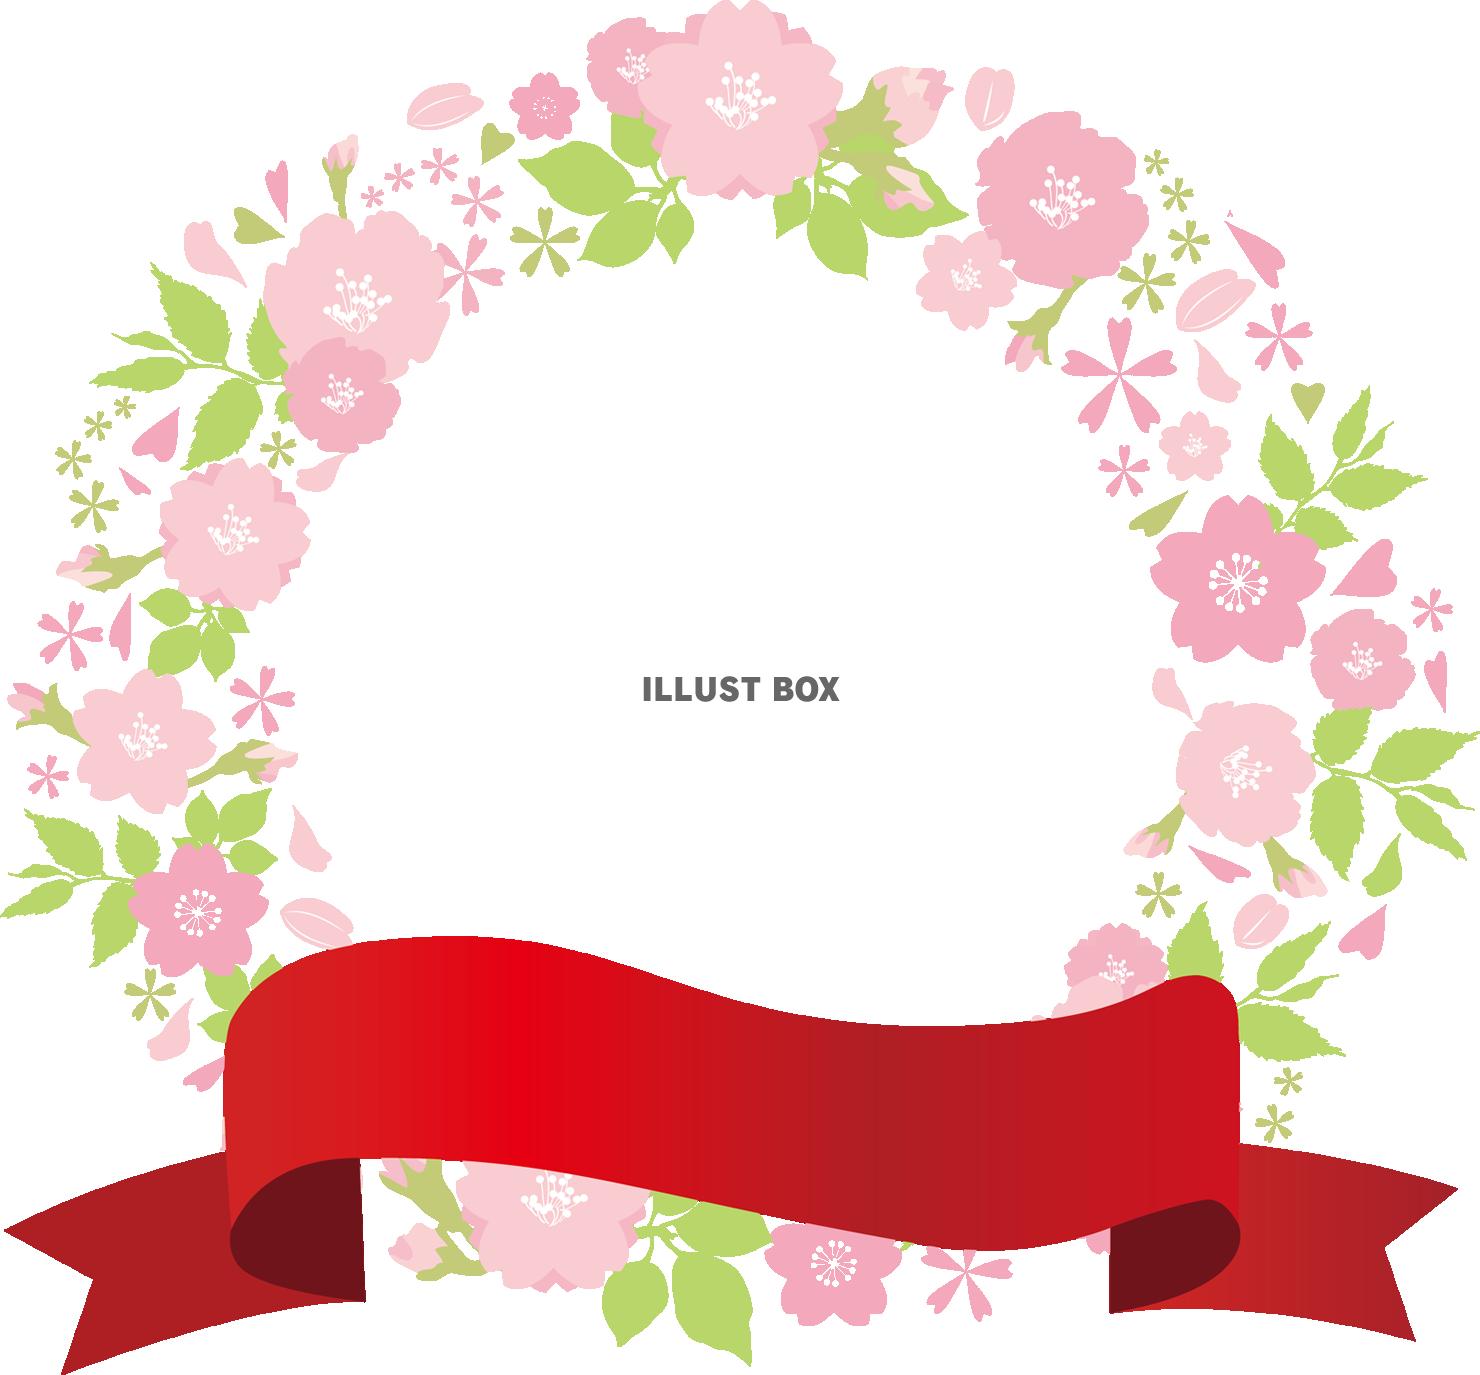 無料イラスト 春植物赤色レッドリボンりぼん桜シンプル可愛いシルエット飾り装